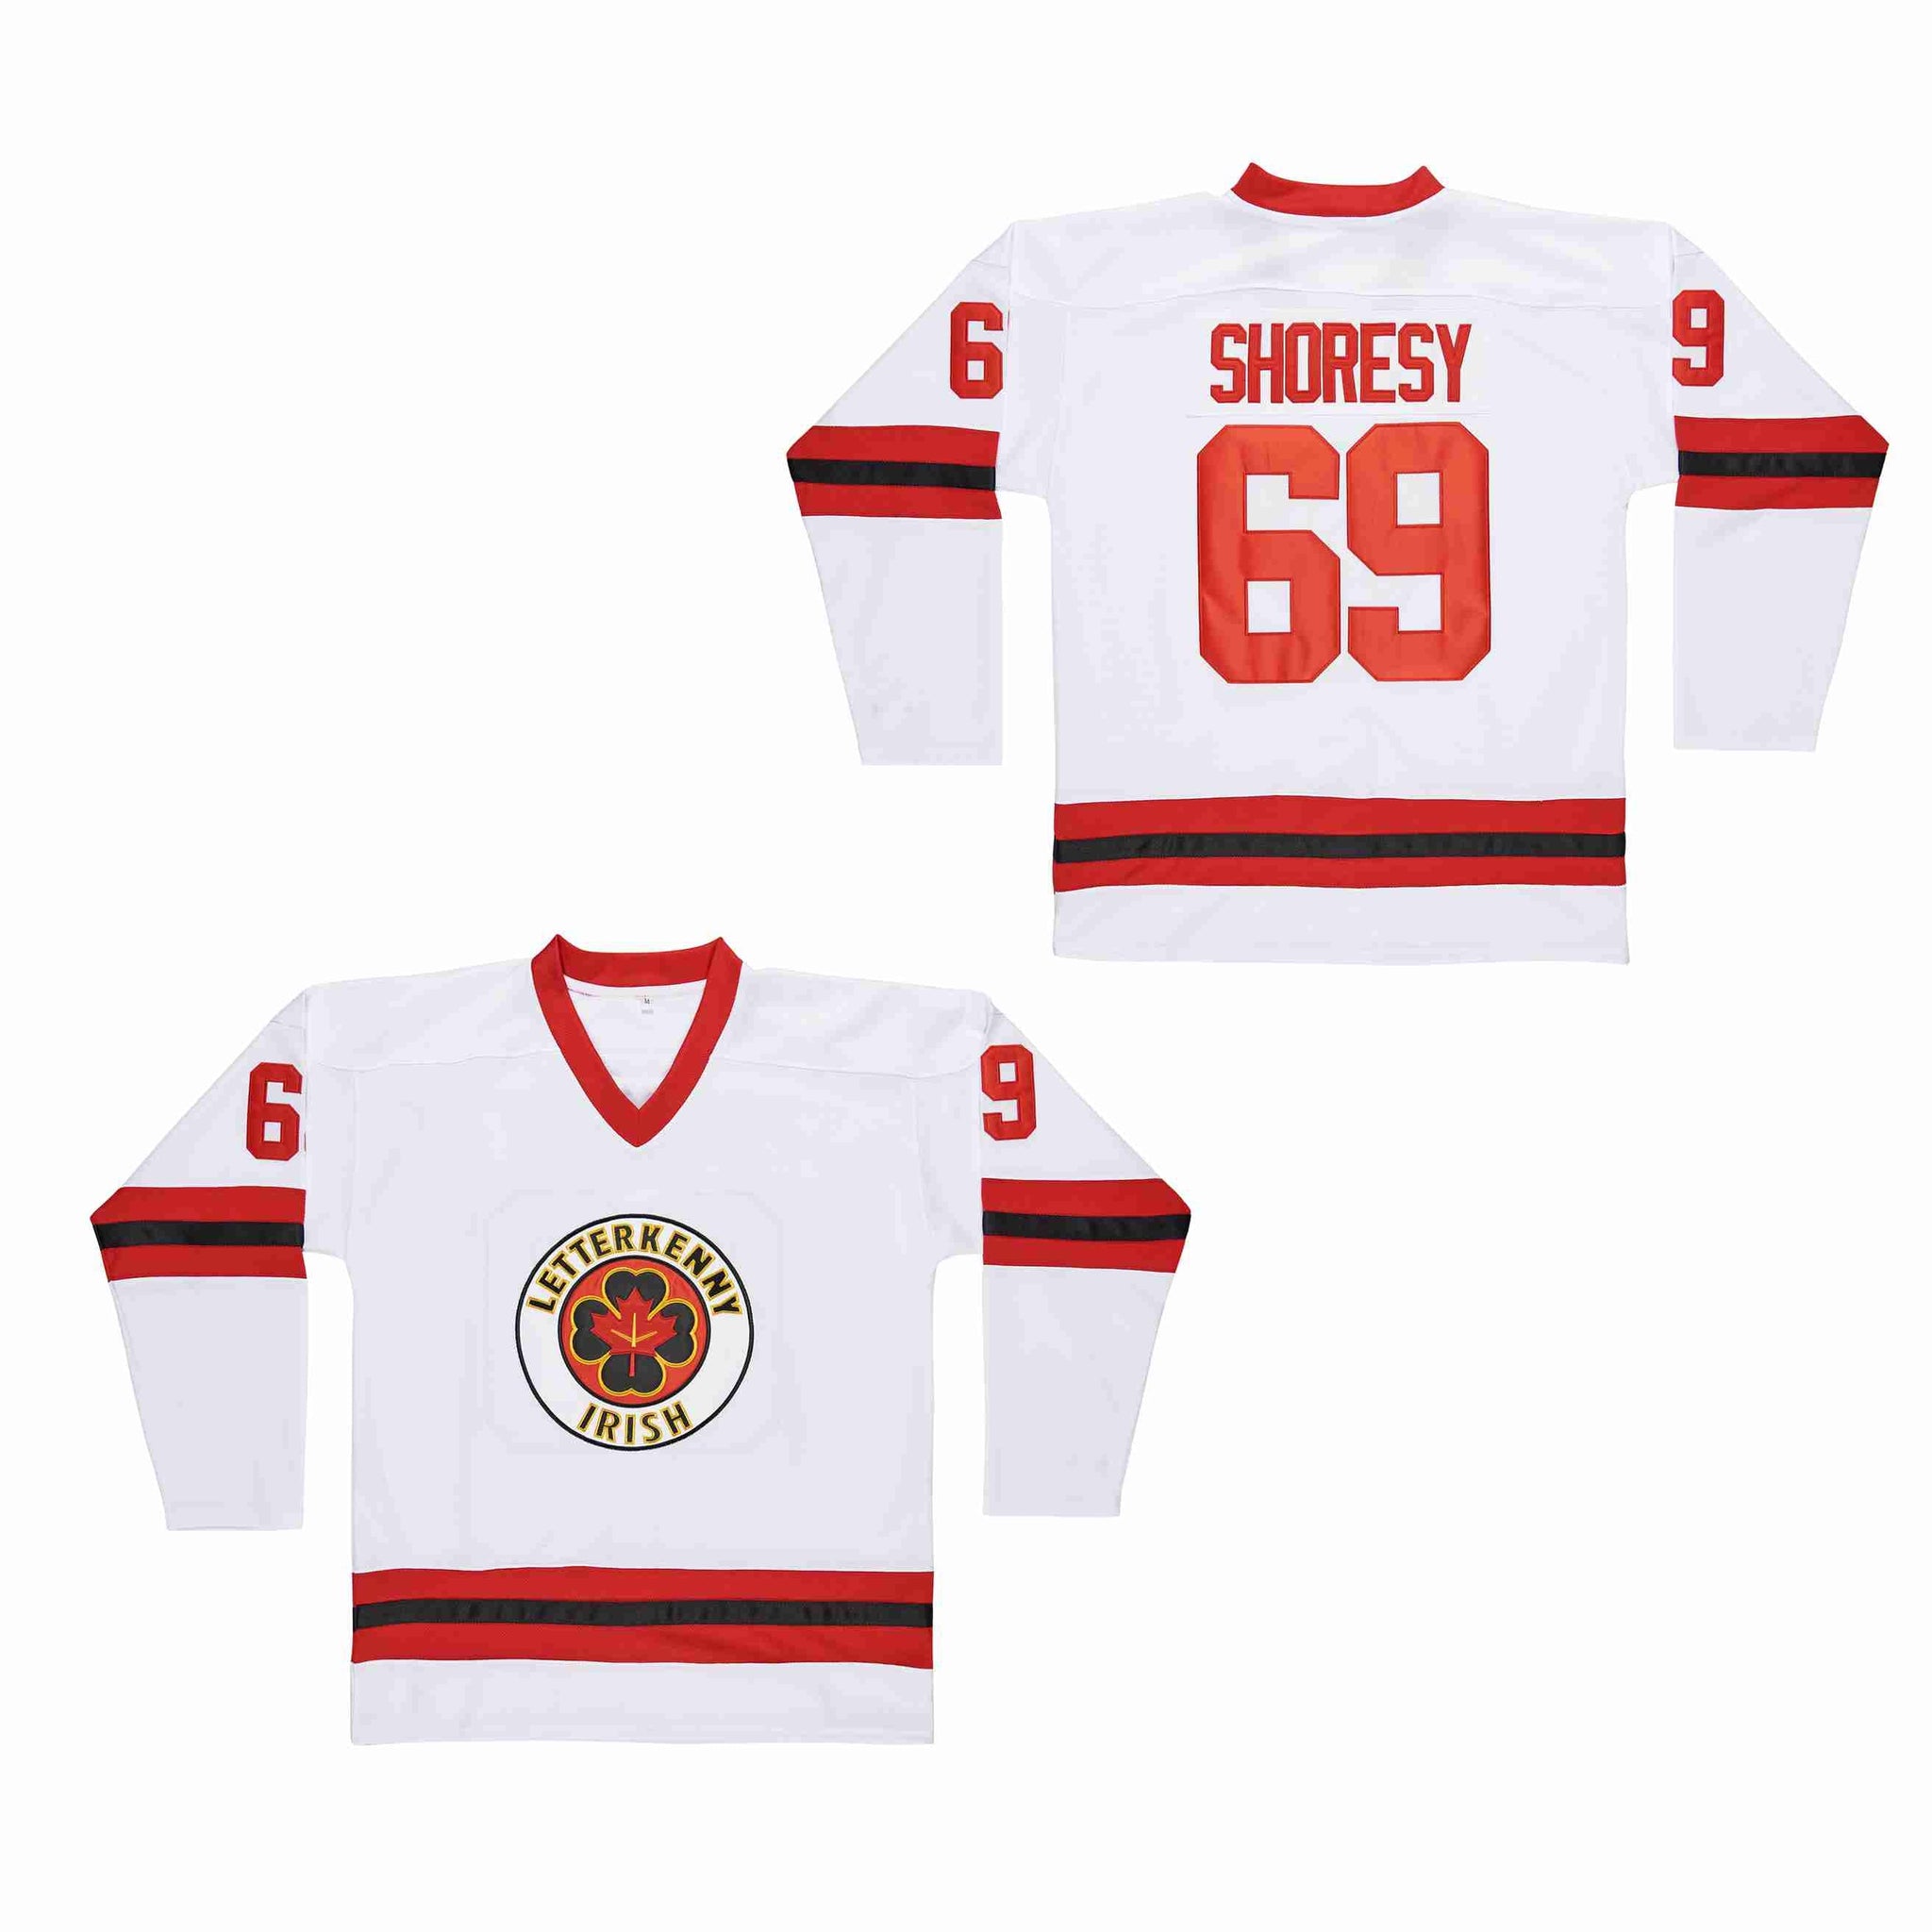 SHORESY 69 Jersey